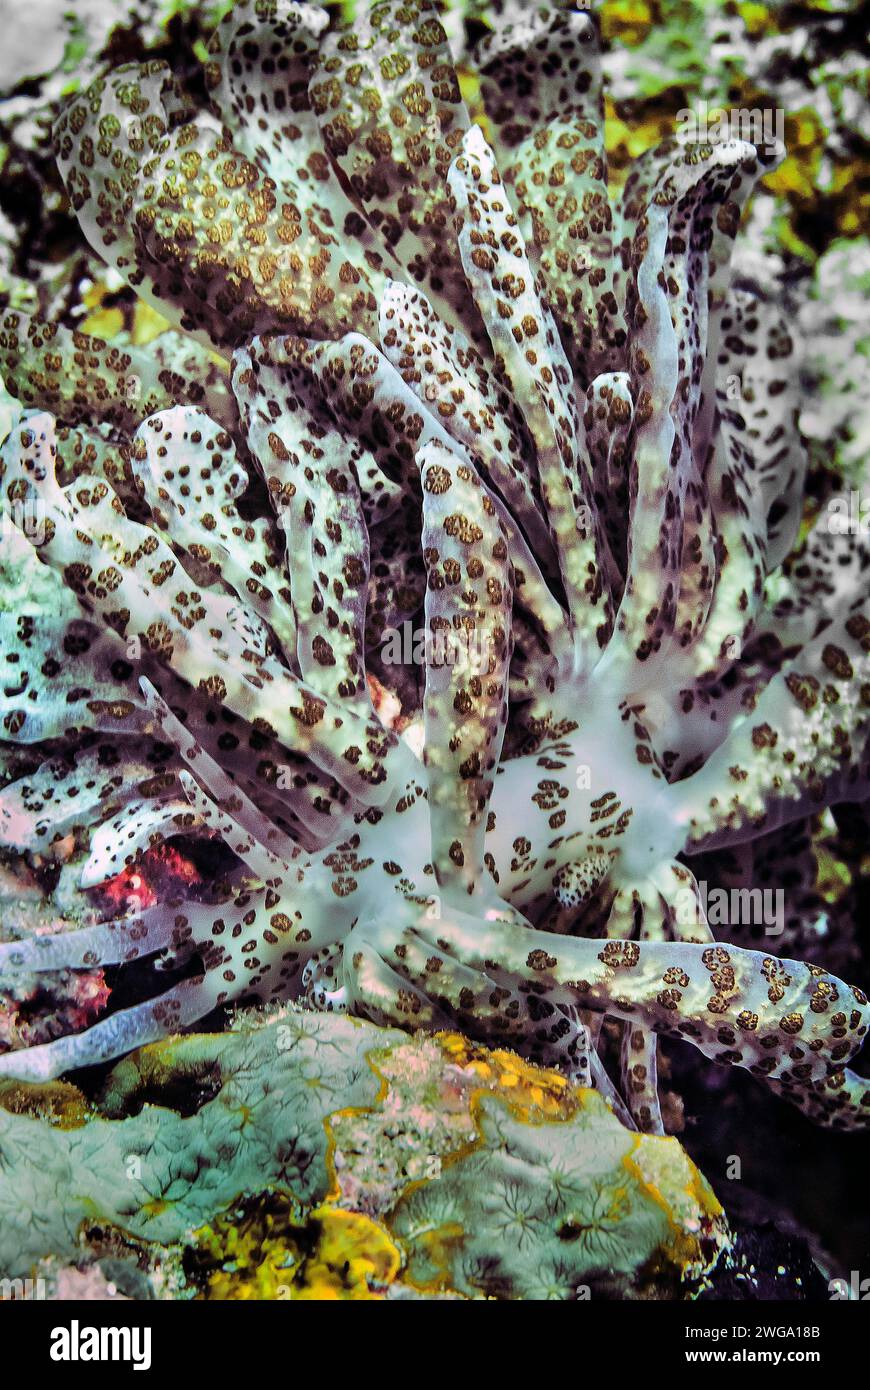 Kryptisches Phyllodesmium (Phyllodesmium crypticum), Wakatobi Dive Resort, Sulawesi, Indonesien Stockfoto